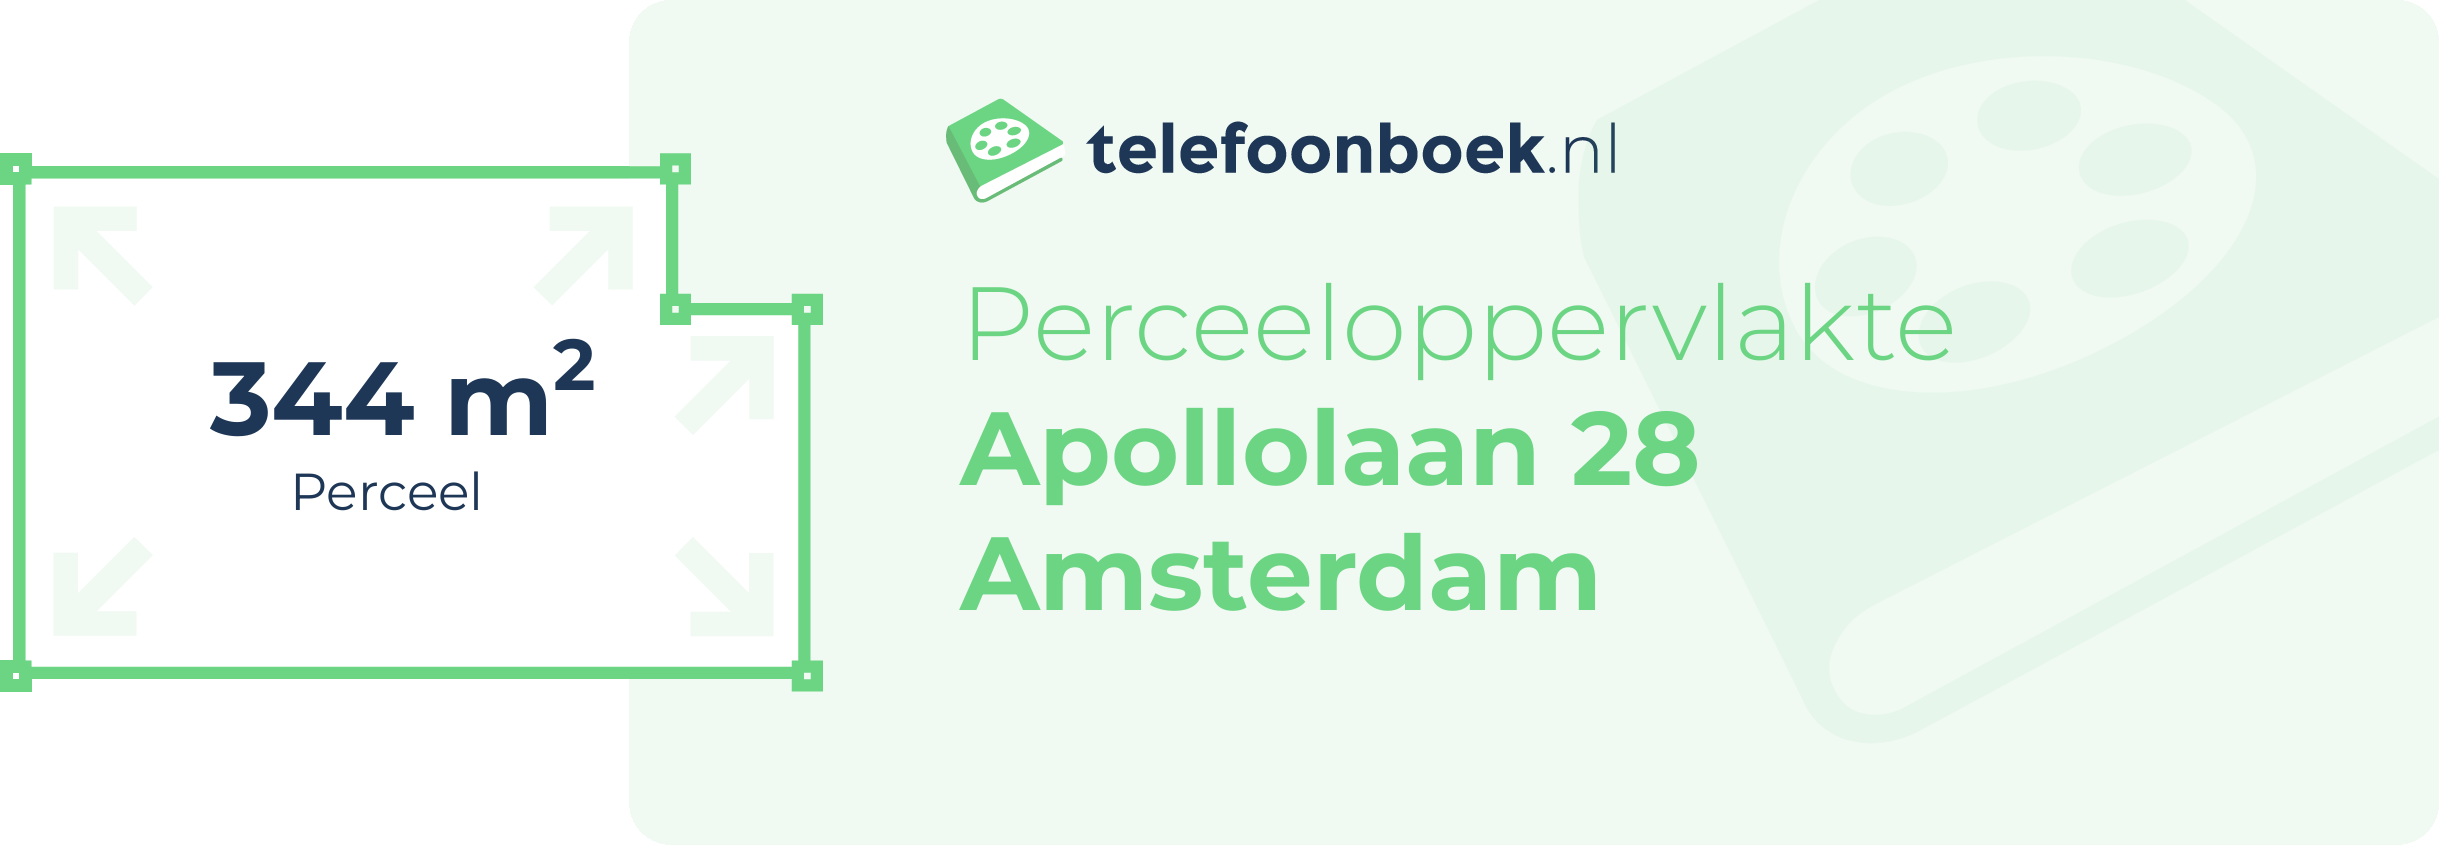 Perceeloppervlakte Apollolaan 28 Amsterdam